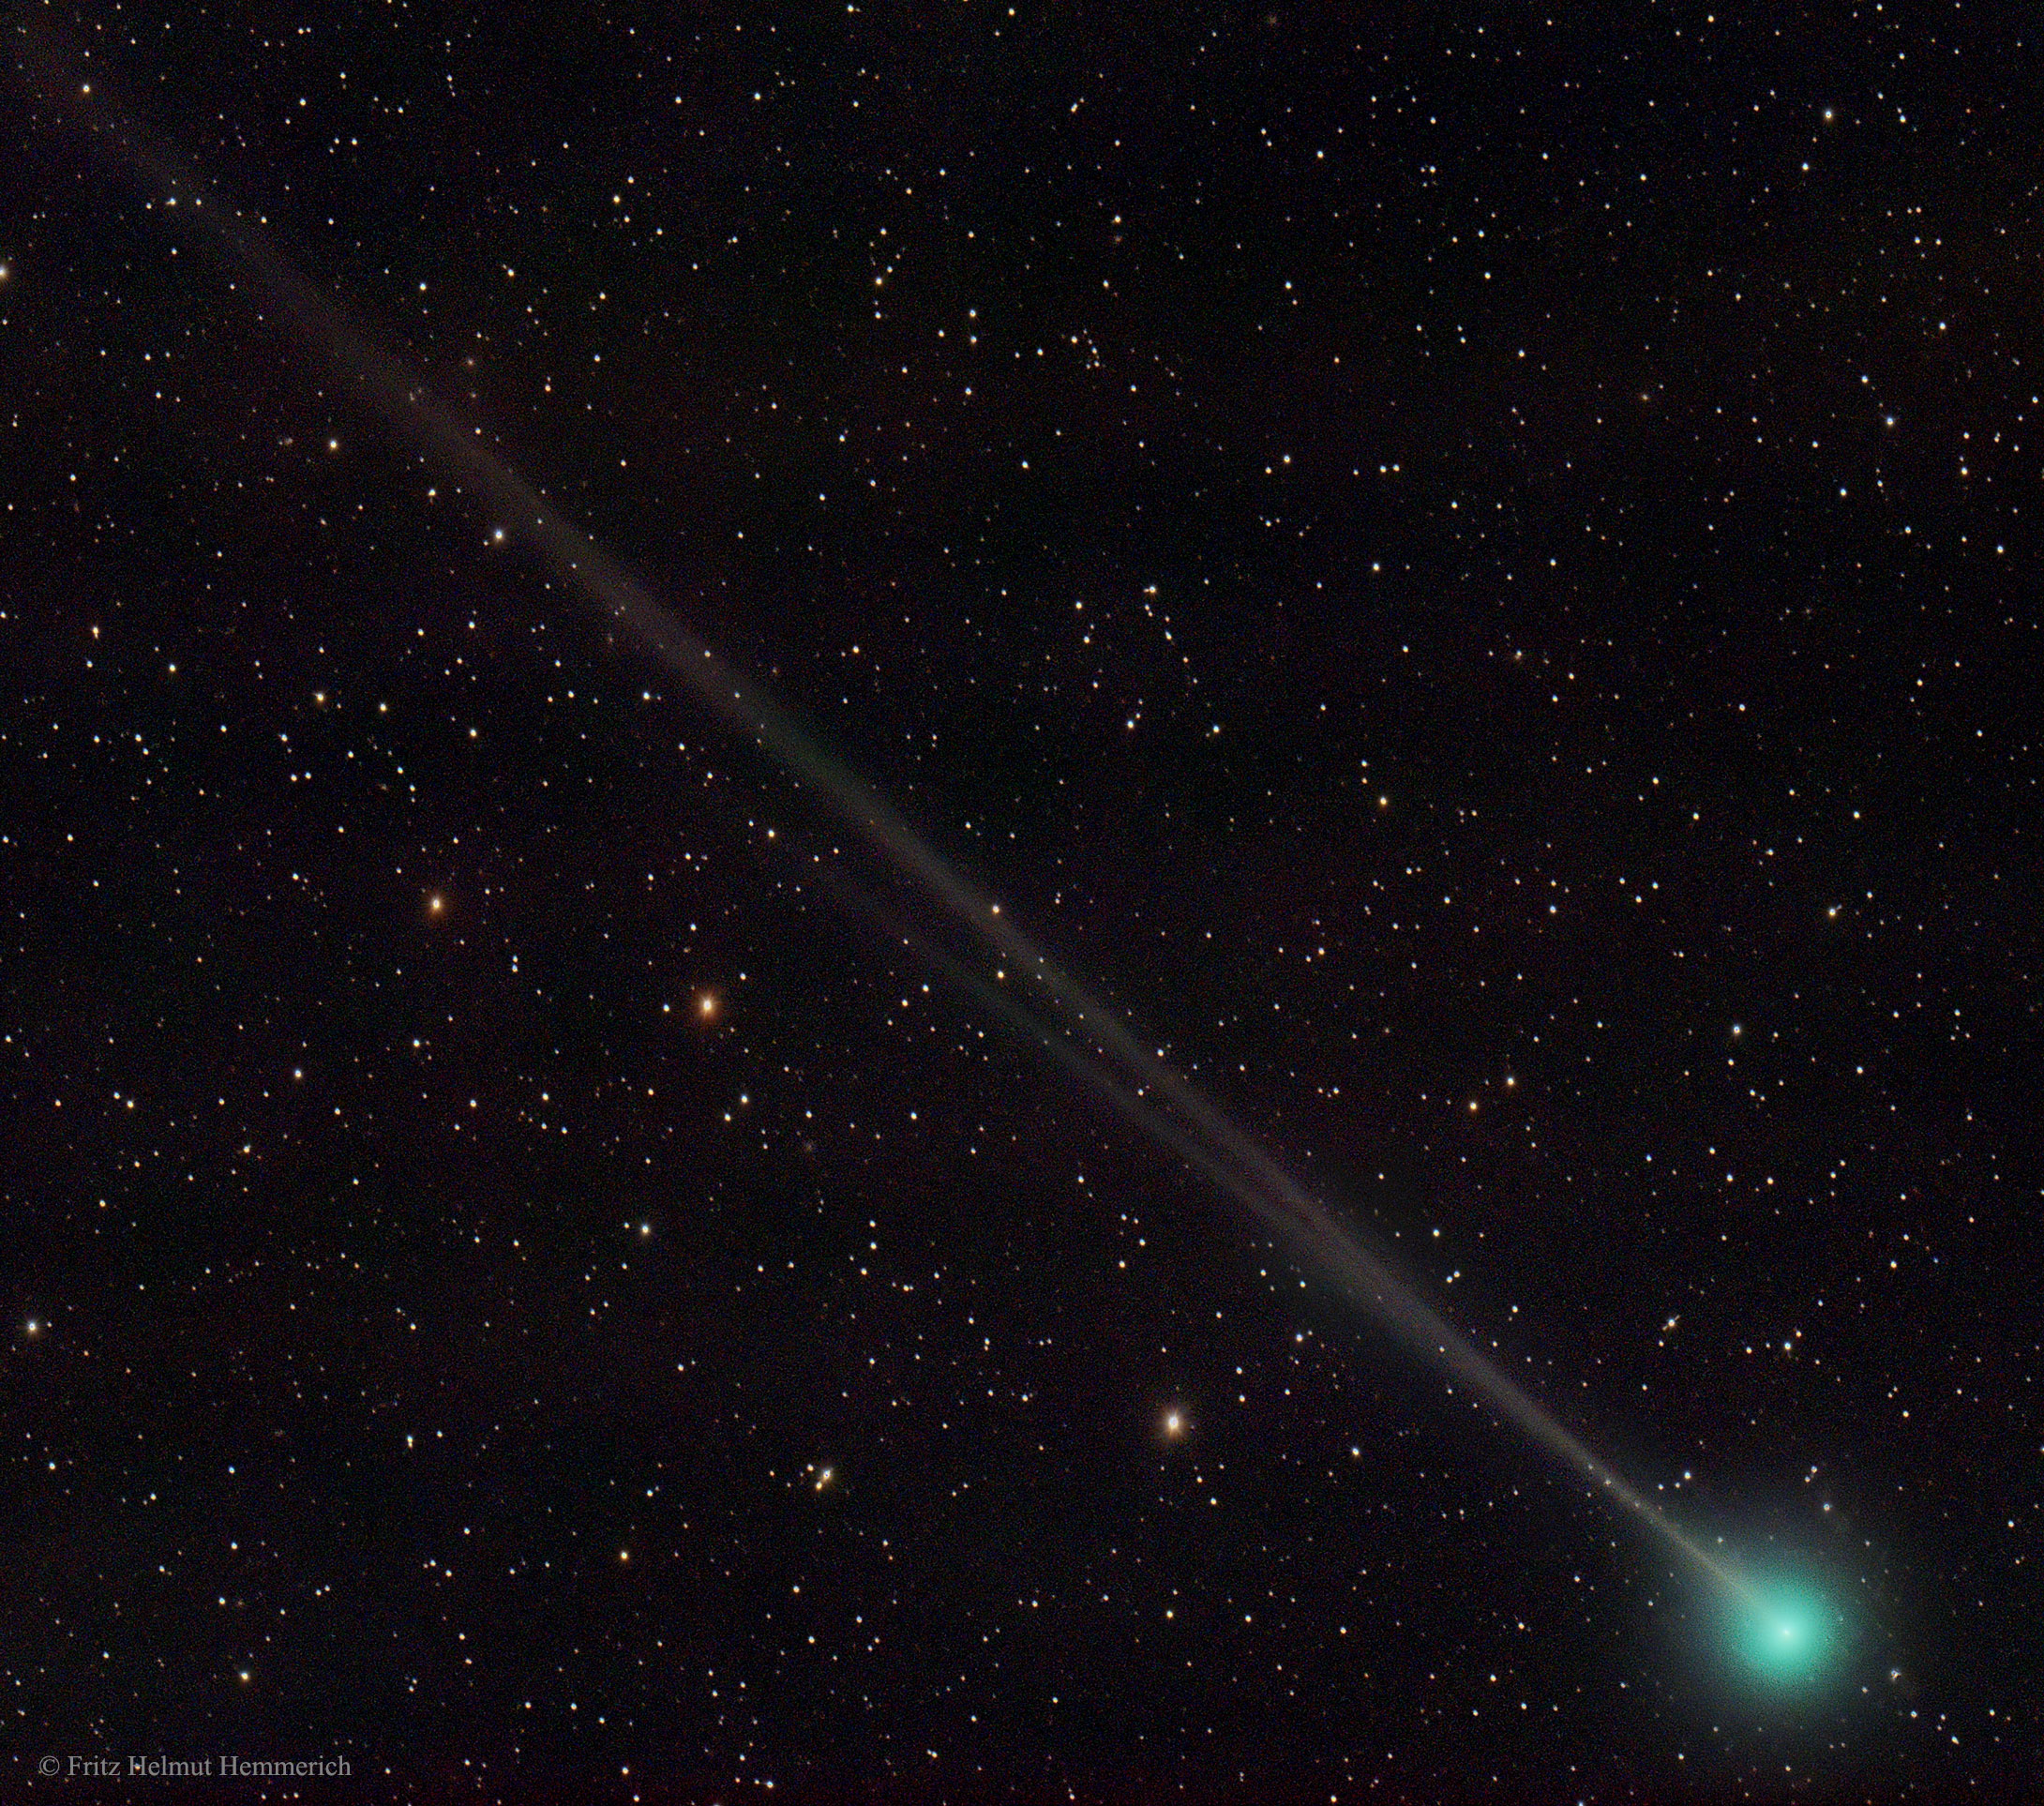 Comet 45P Returns